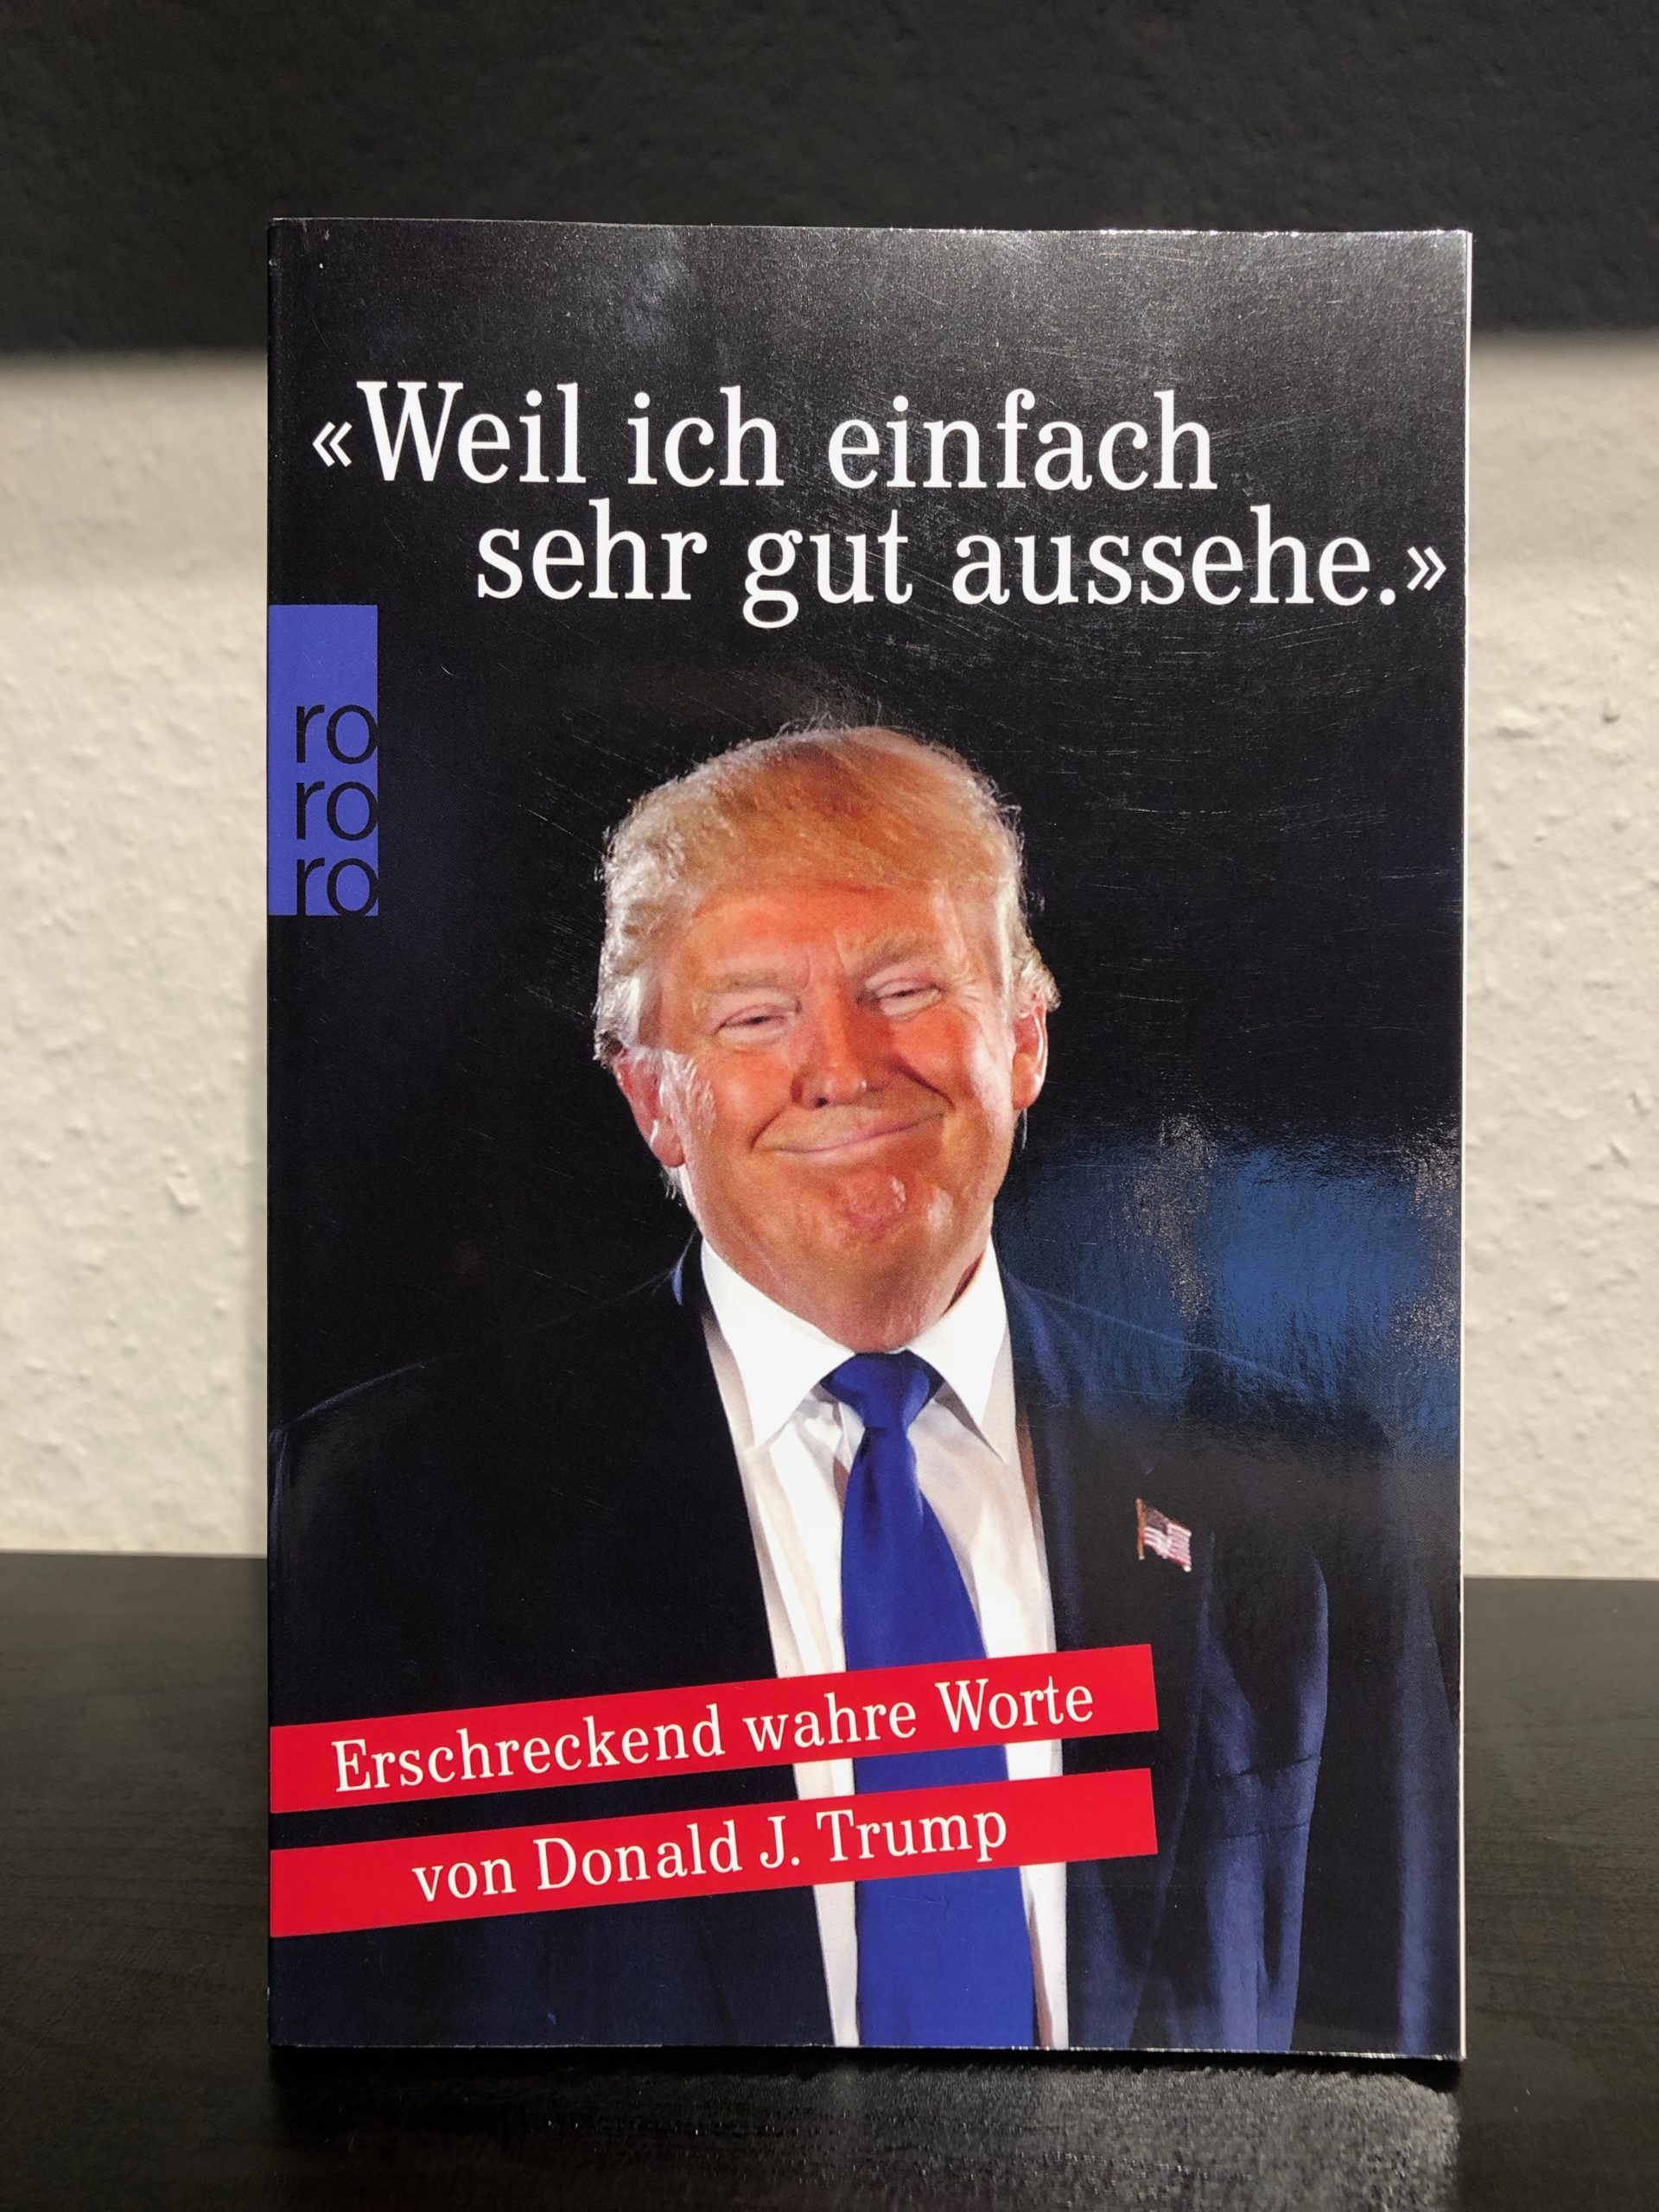 "Weil ich einfach sehr gut aussehe" - Erschreckend wahre Worte von Donald Trump - Moritz Piehler-image